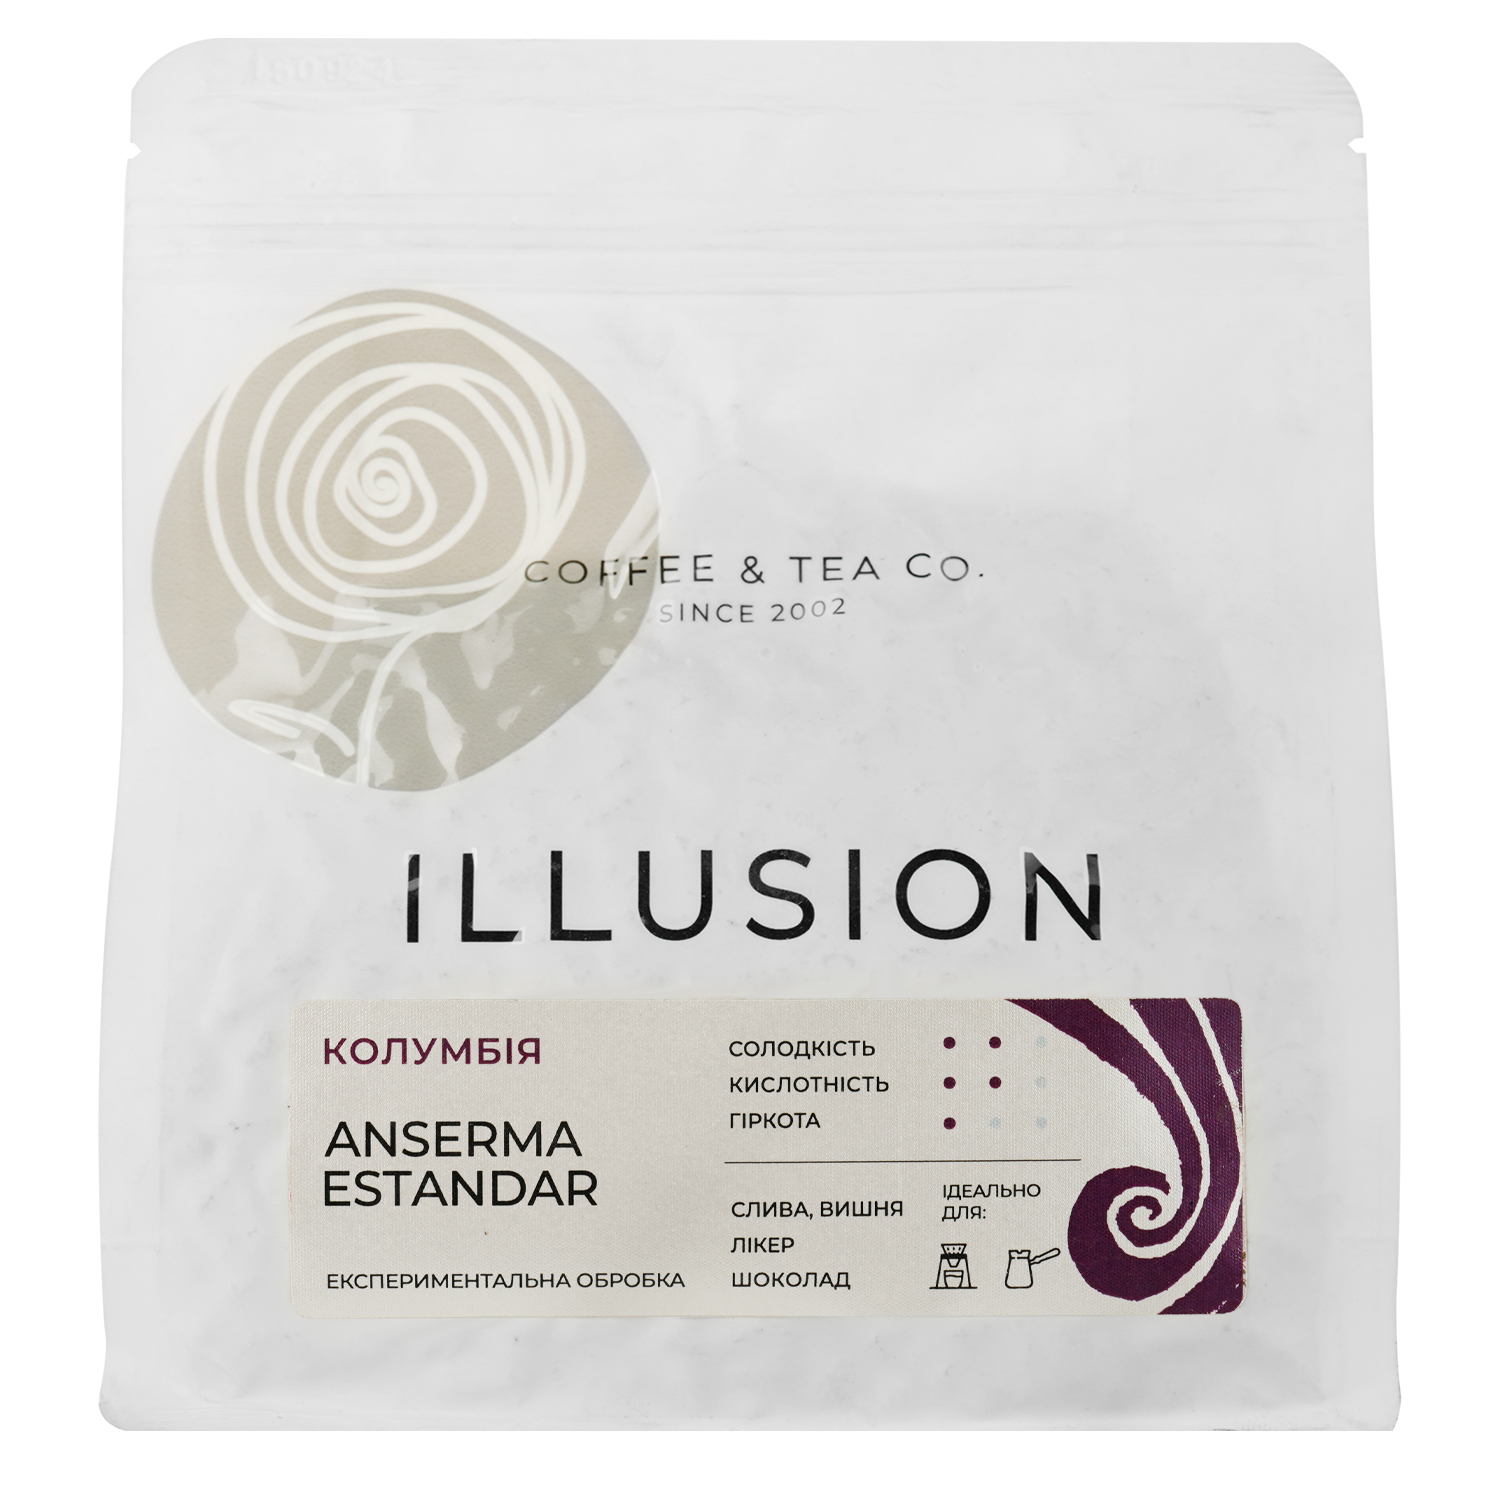 Кофе в зернах Illusion Colombia Anserma Estandar (эспрессо), 200г - фото 1